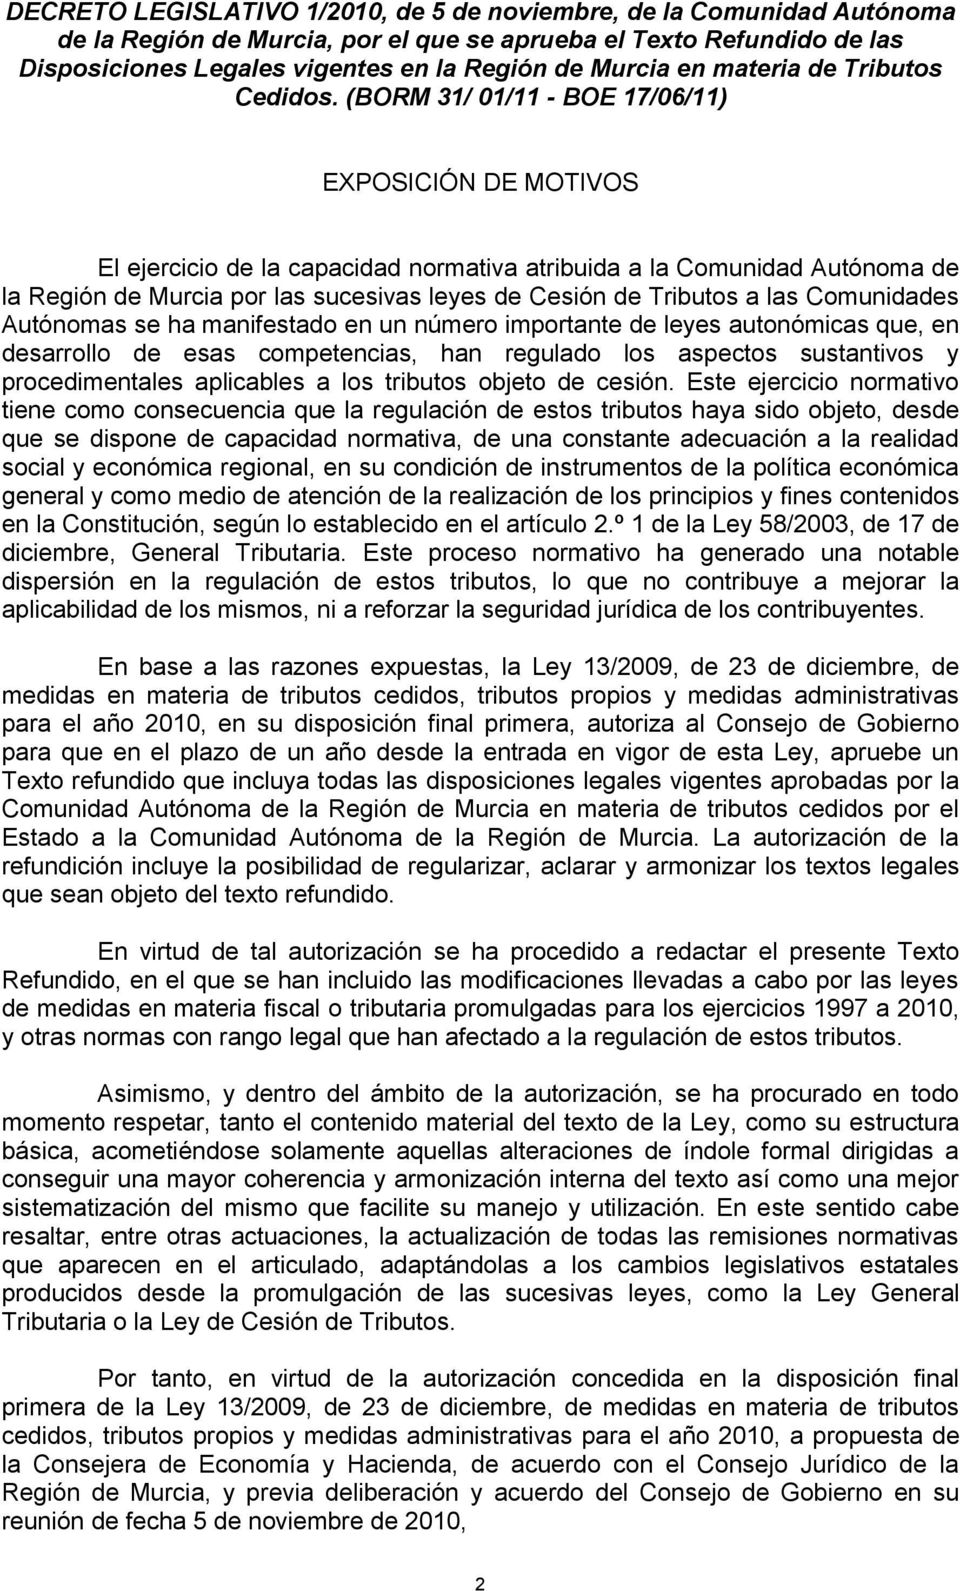 (BORM 31/ 01/11 - BOE 17/06/11) EXPOSICIÓN DE MOTIVOS El ejercicio de la capacidad normativa atribuida a la Comunidad Autónoma de la Región de Murcia por las sucesivas leyes de Cesión de Tributos a